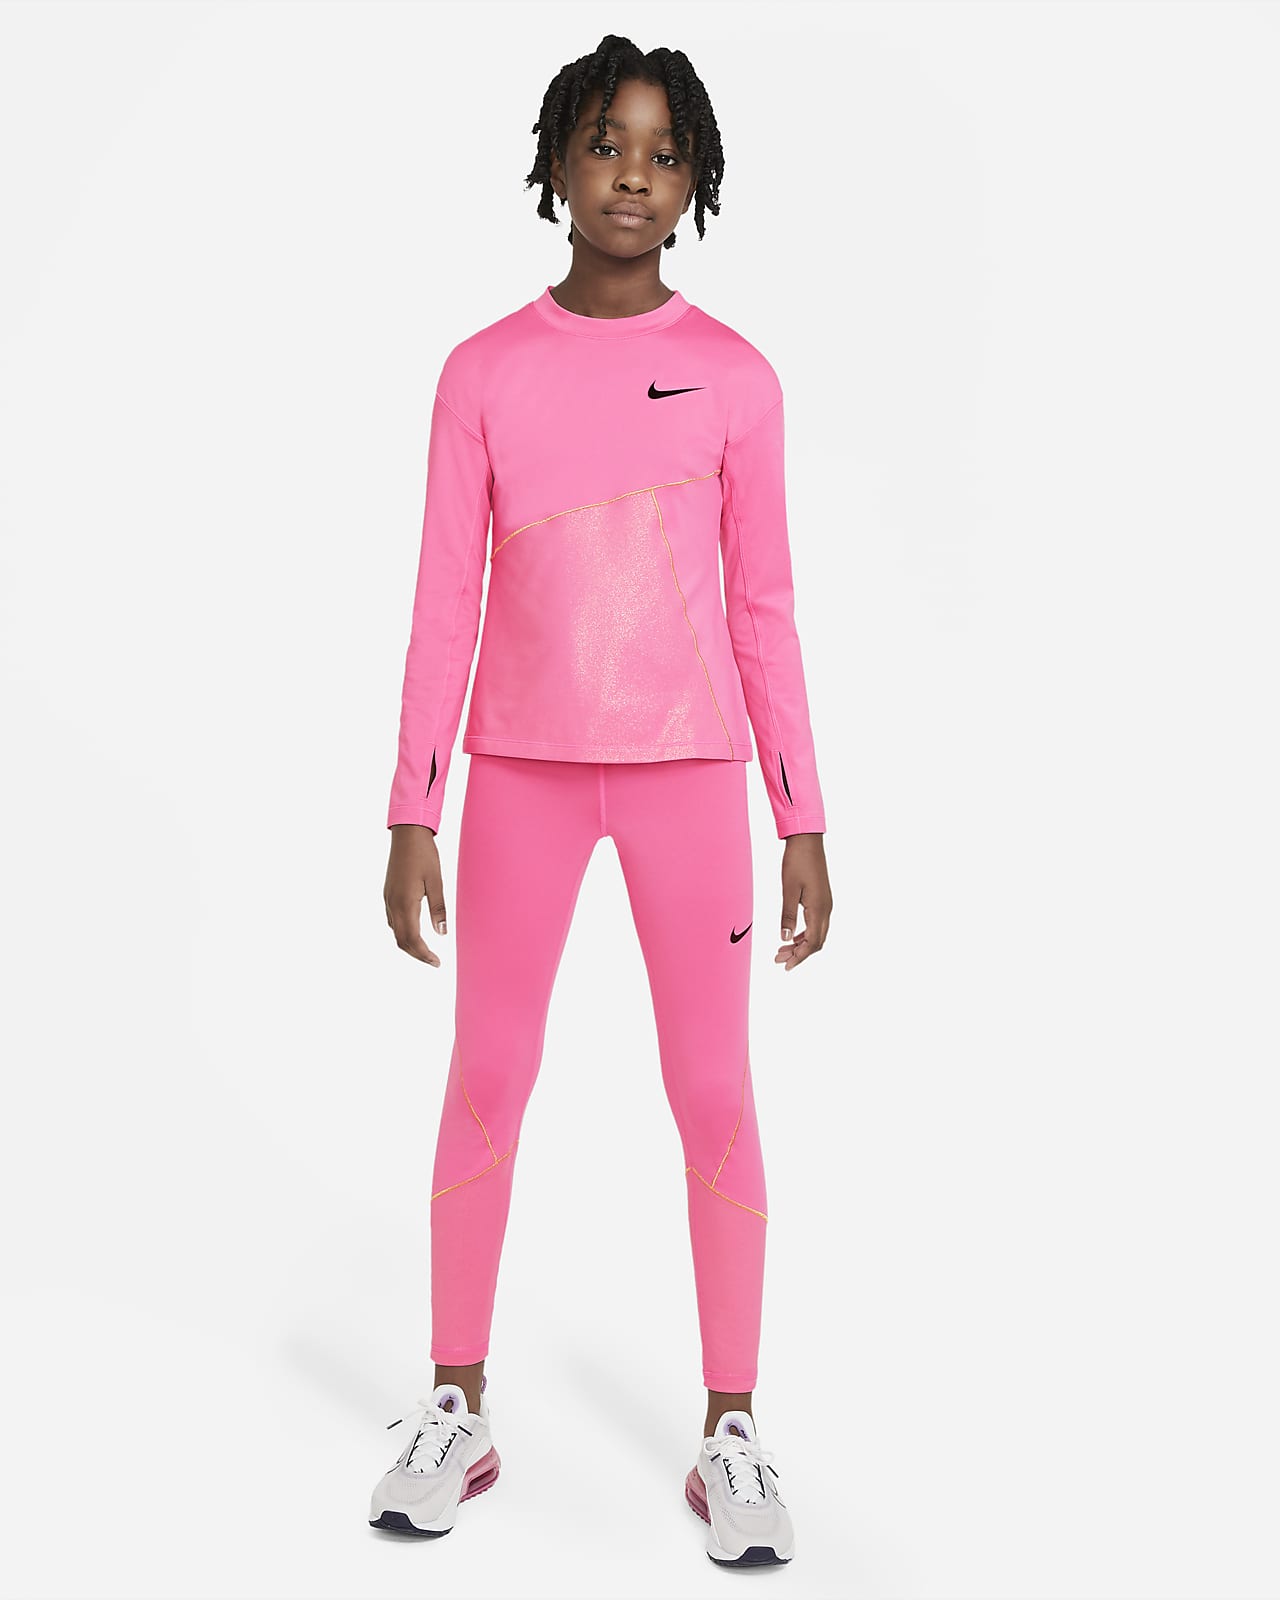 pink nike training top